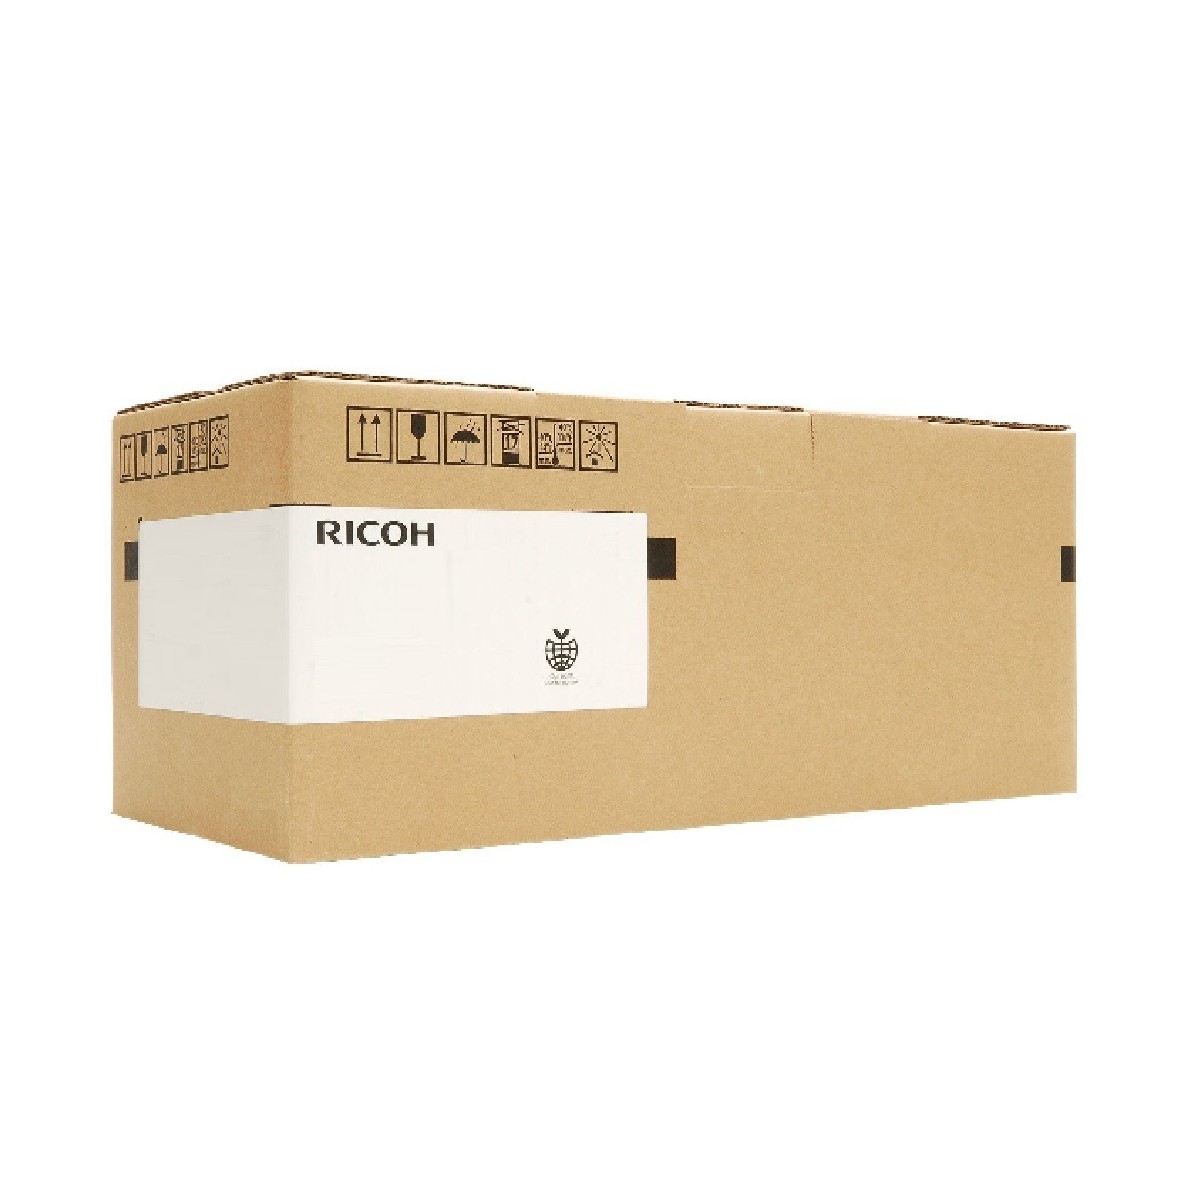 Ricoh B230KFUSA - Maintenance kit - 160000 pages - Ricoh - Afficio MP C3000C Aficio MP C-2500 Aficio MP C-3000 Aficio MP C2000 -